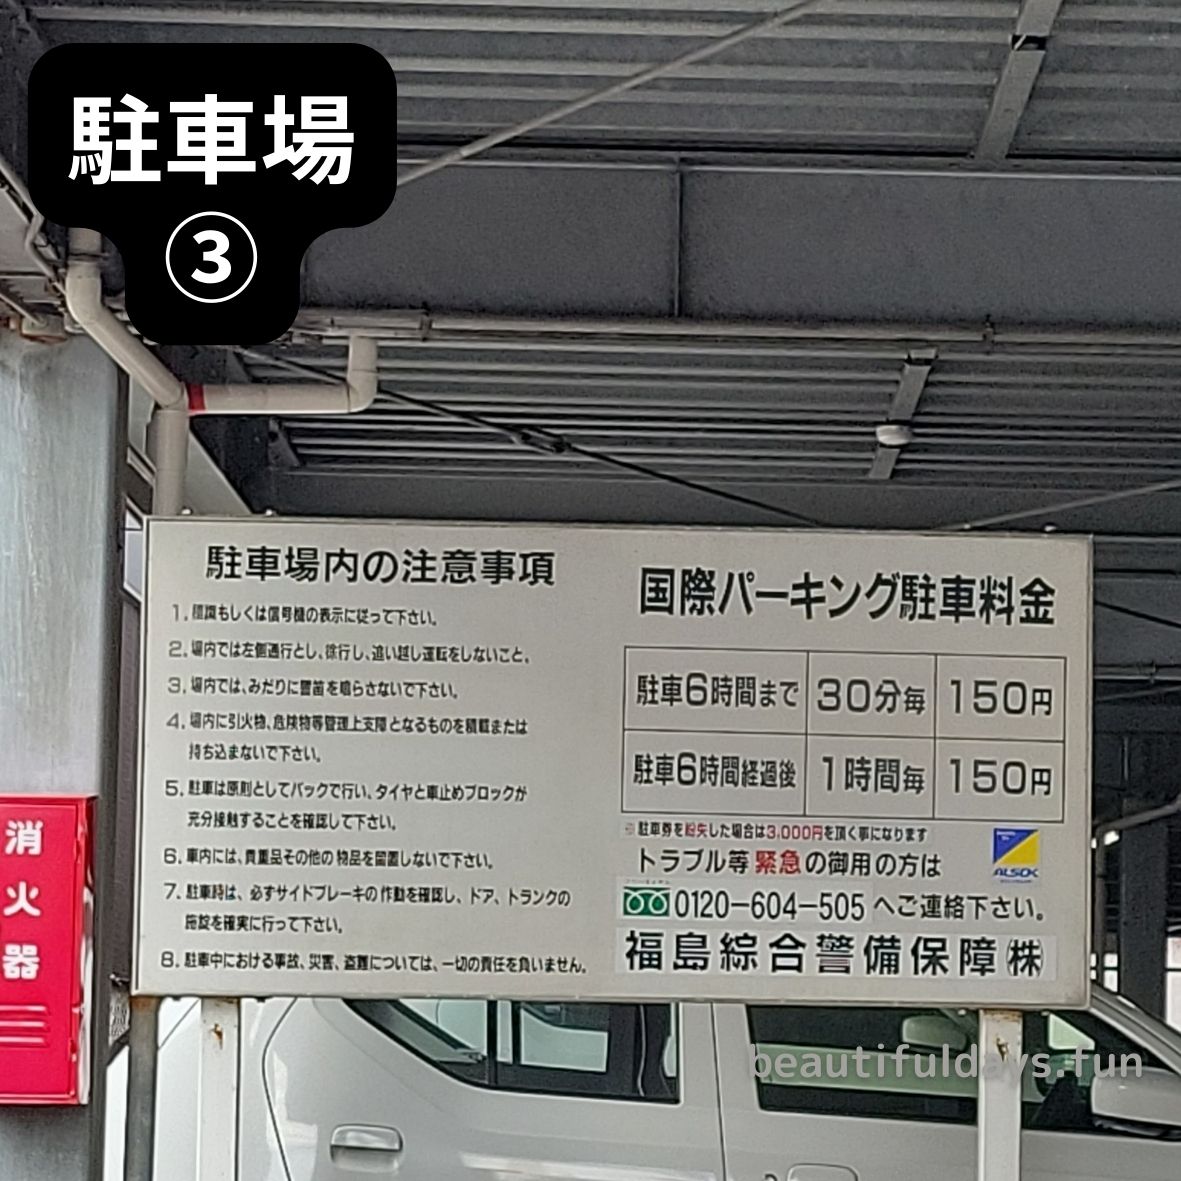 hukushima-parking11